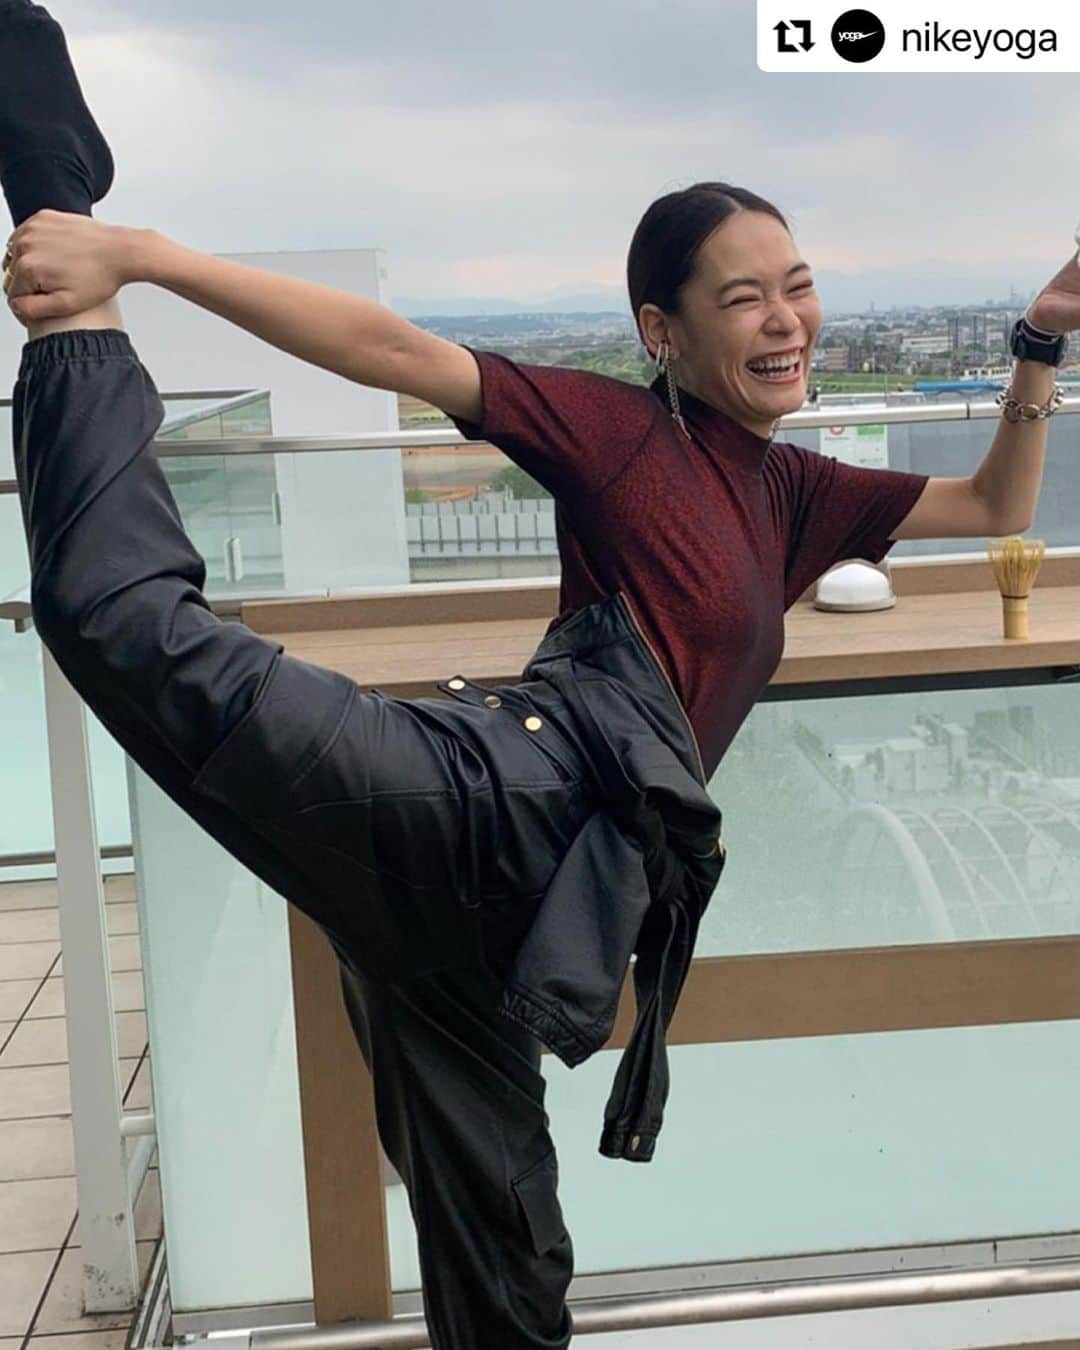 池田莉子のインスタグラム：「NIKE YOGA グローバル アカウントの記事が、アップされました✨ 日本語も載せてくれてて嬉しいな。 いつもの私を記事にして頂きました😘😘 これからも日本から世界のヨギーへ向けて発信していくので みなさん是非 @nikeyoga のフォローお願いします😍  @ricoikeda’s journey with yoga began when a knee injury led her to find a new way of moving her body. Through ceremonial tea 🍵 yoga classes, upbeat jams 🎶 or karate moves 🥋, Rico loves to find ways of including people of all different levels into her practice. Stay tuned for more from Rico and the ~unique~ spin she puts on her flow next week.  きっかけは膝のケガ。@ricoikeda はヨガに出会い、身体の動きを発掘。茶道🍵やヨガのレッスン、ノリノリの音楽🎶や空手🥋を通して、Ricoはヨガにみんなを巻き込むのが大好き。どんな風にヨガをハッピーにアレンジするのか、このストーリーで覗いてみよう。  #nikeyoga #nike #yoga」